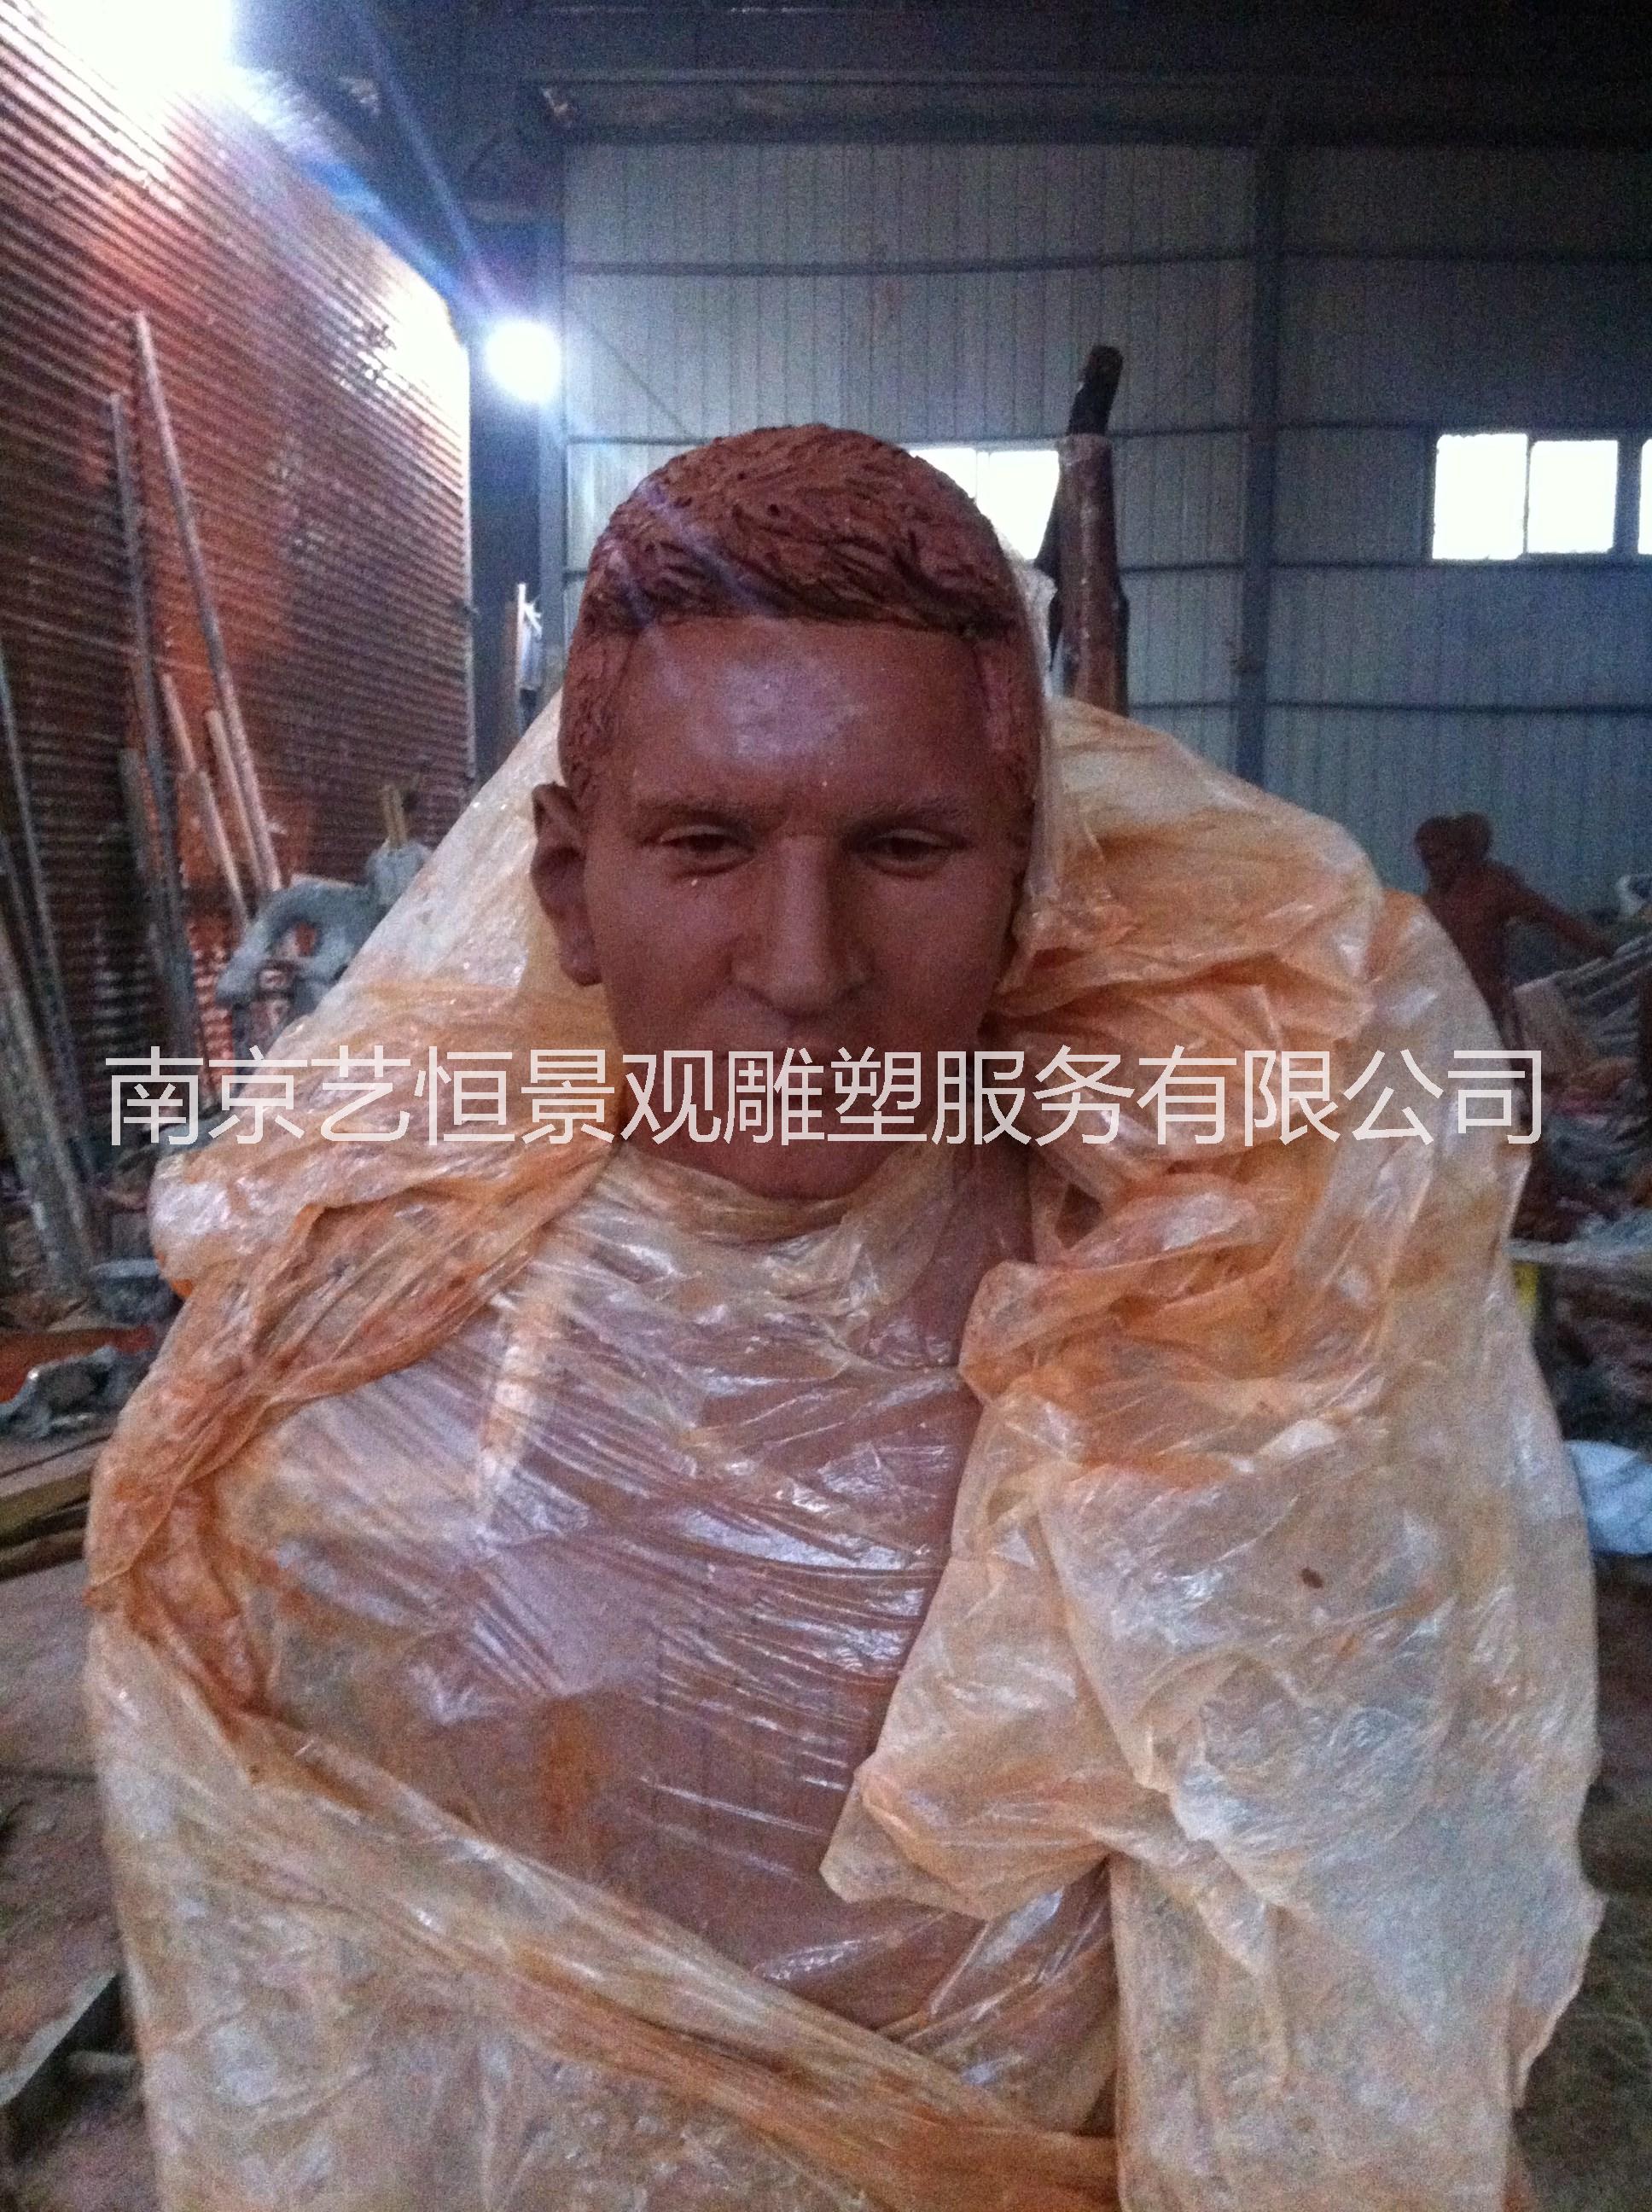 泥塑 南京厂家专业制作泥塑 人物泥塑 泥塑雕刻 泥塑模型